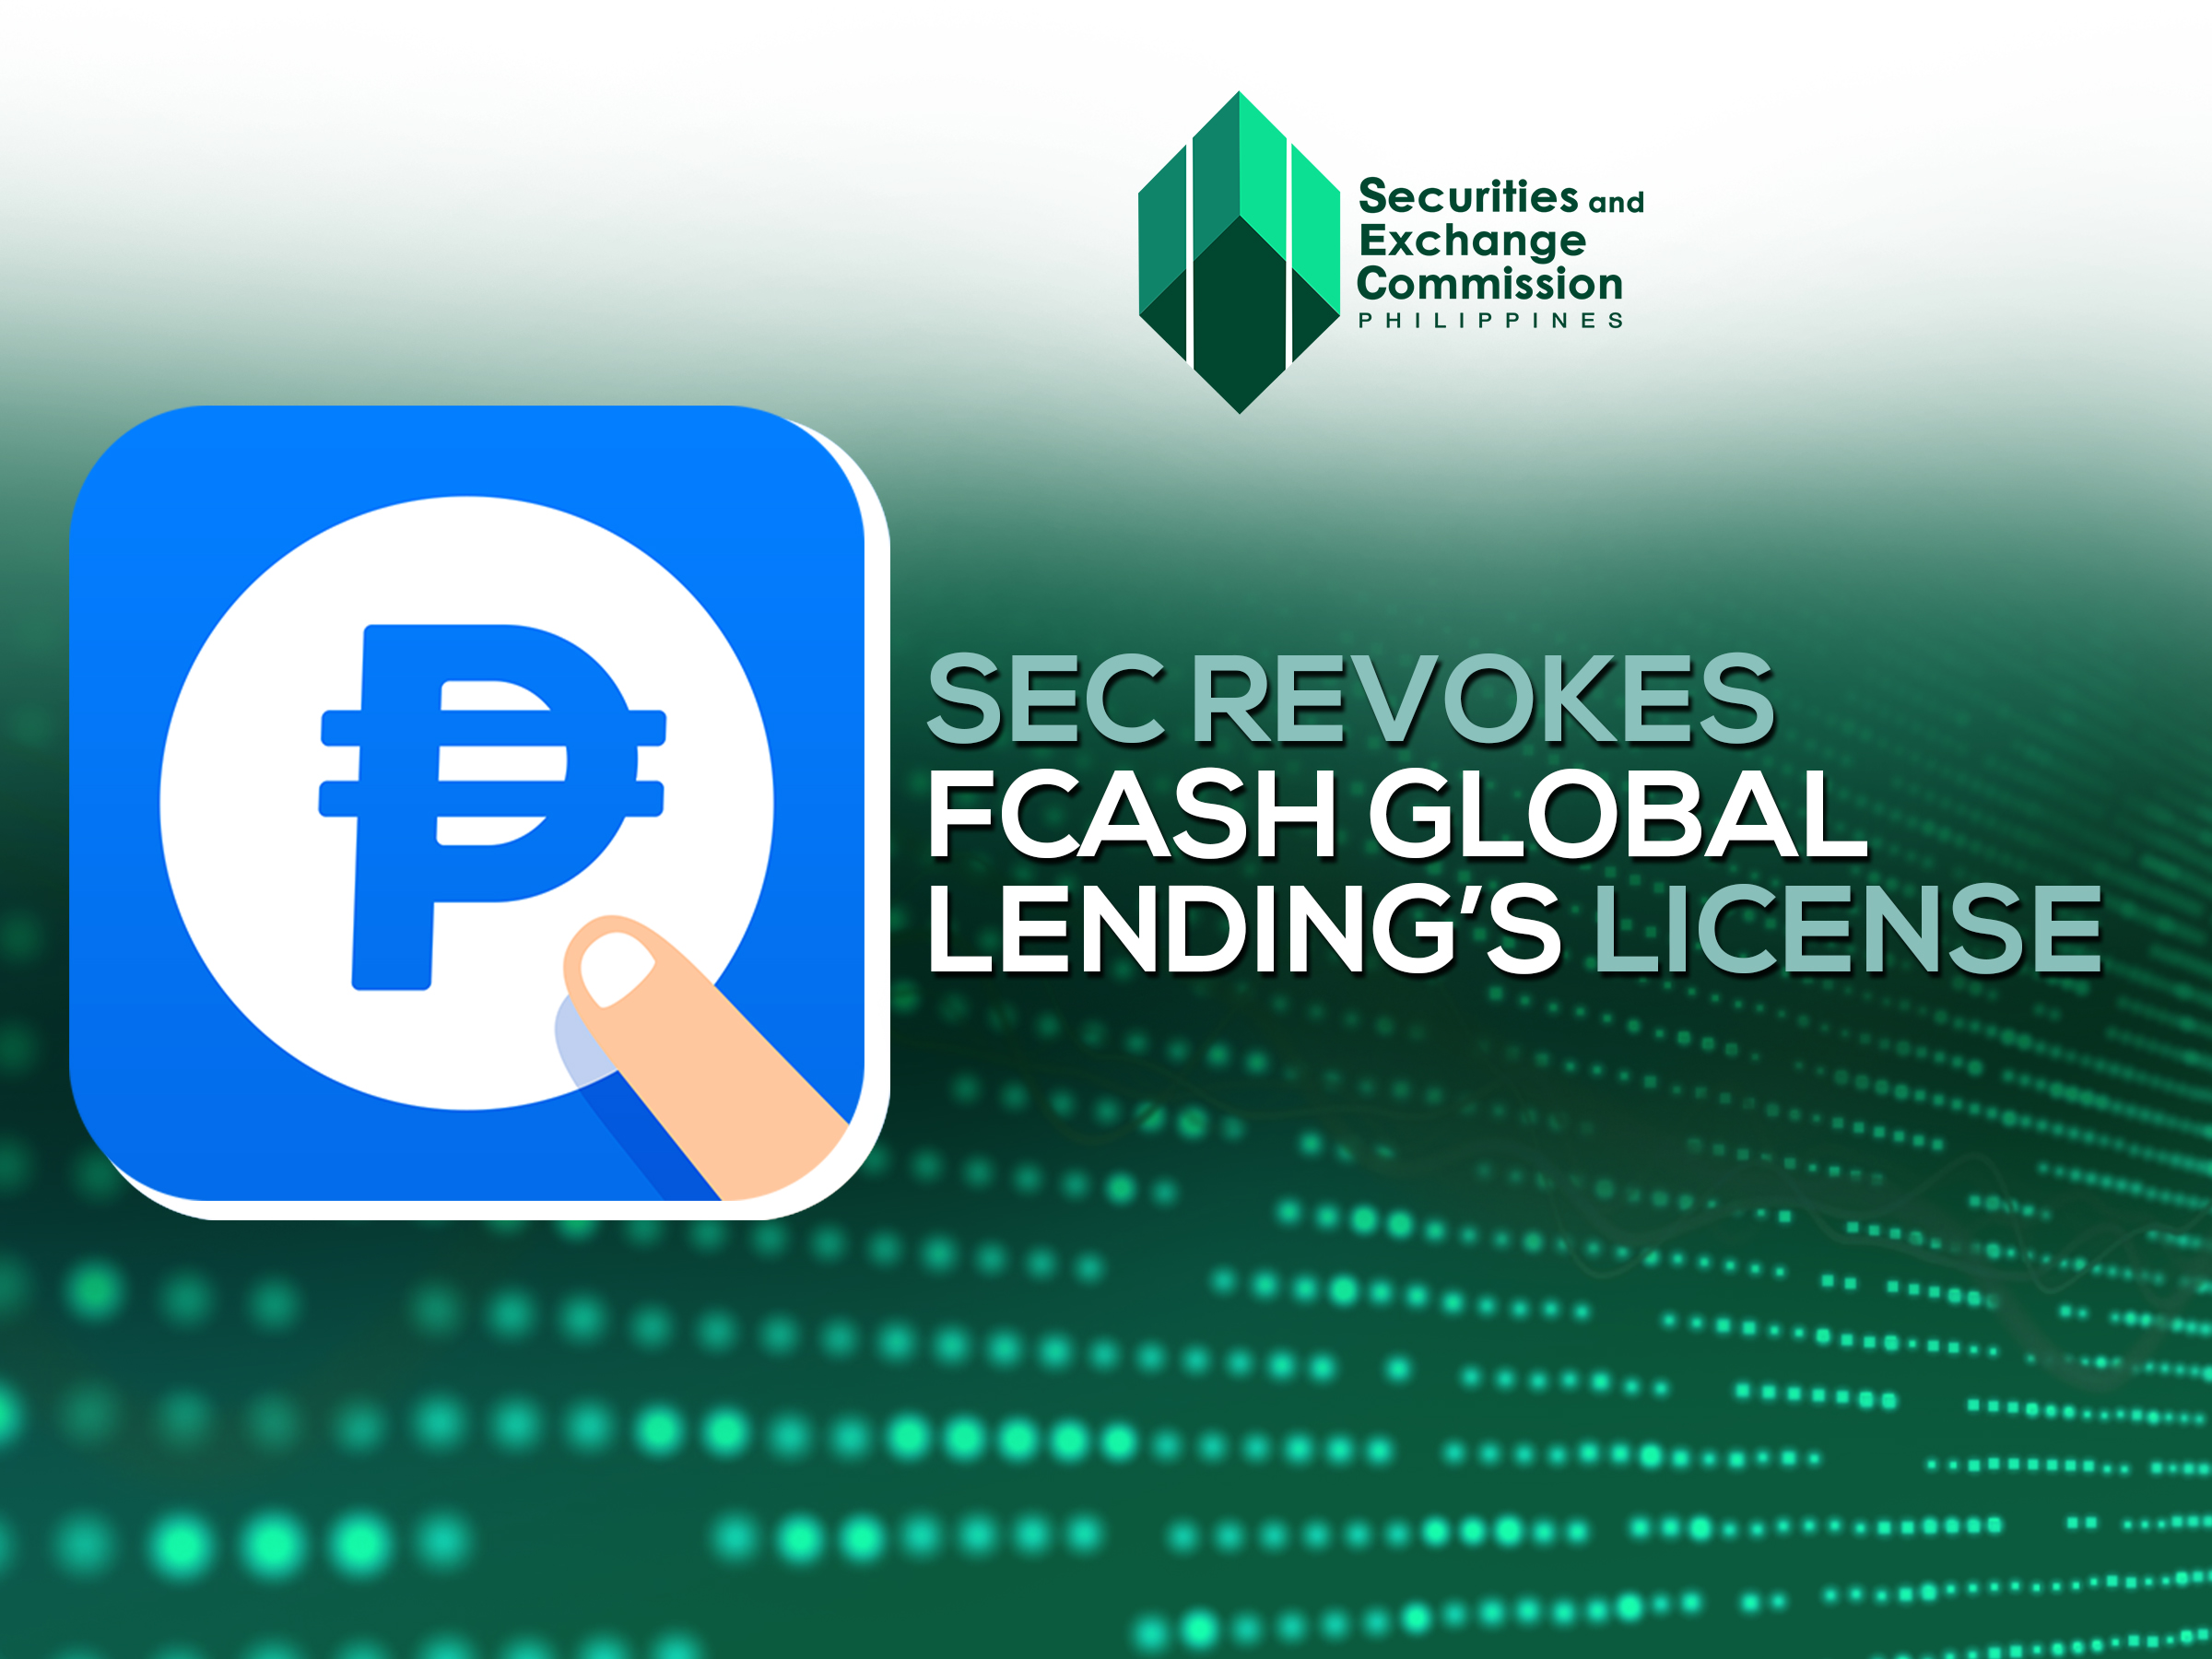 FCash Global Lending license canceled